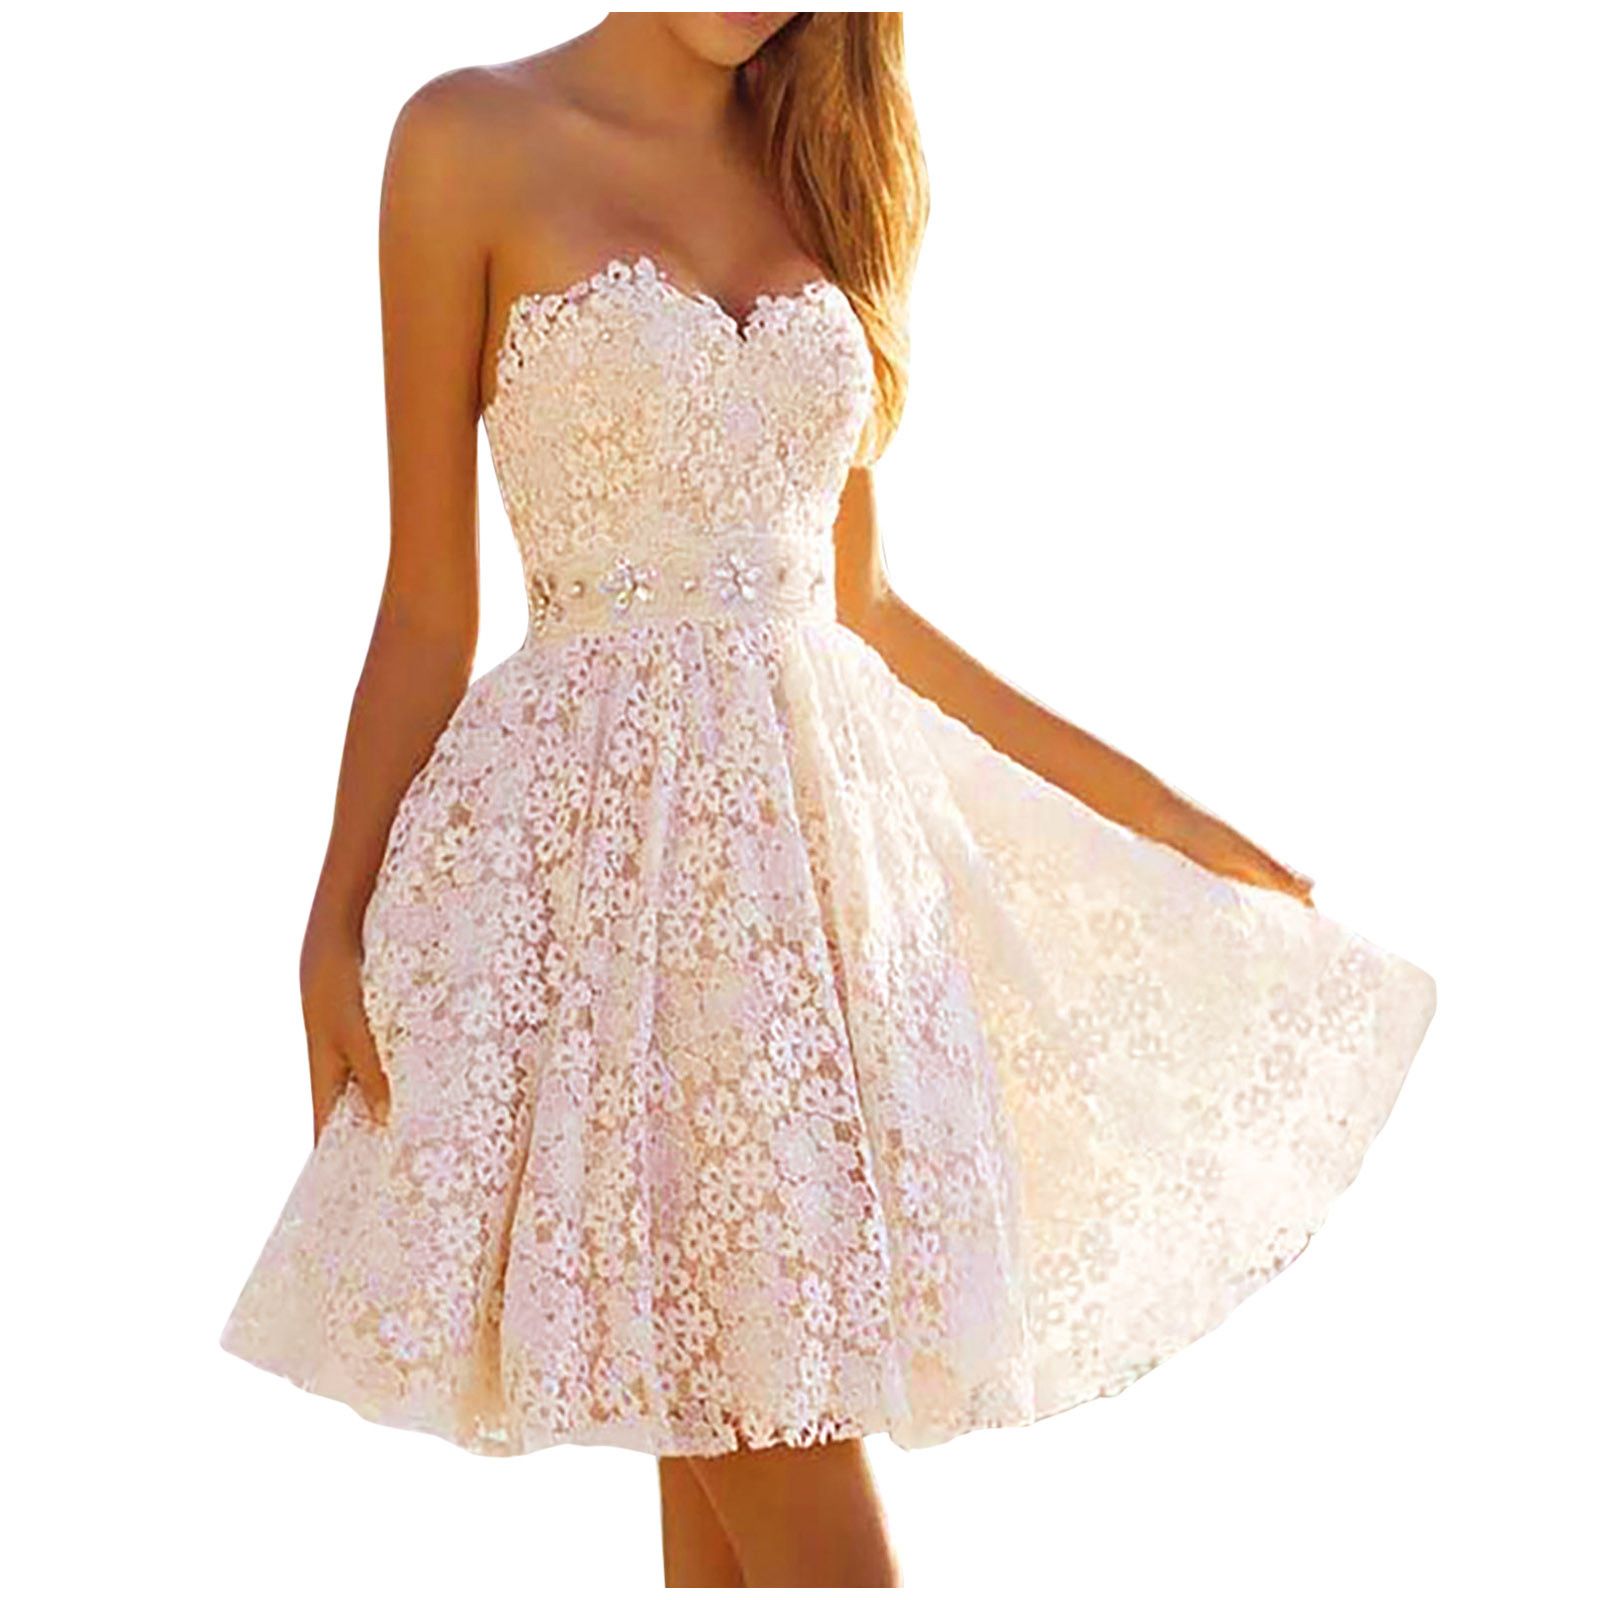 Недорогие белые платья. Короткое свадебное платье. Свадебное платье к оротекое. Белое короткое платье. Красивые короткие Свадебные платья.